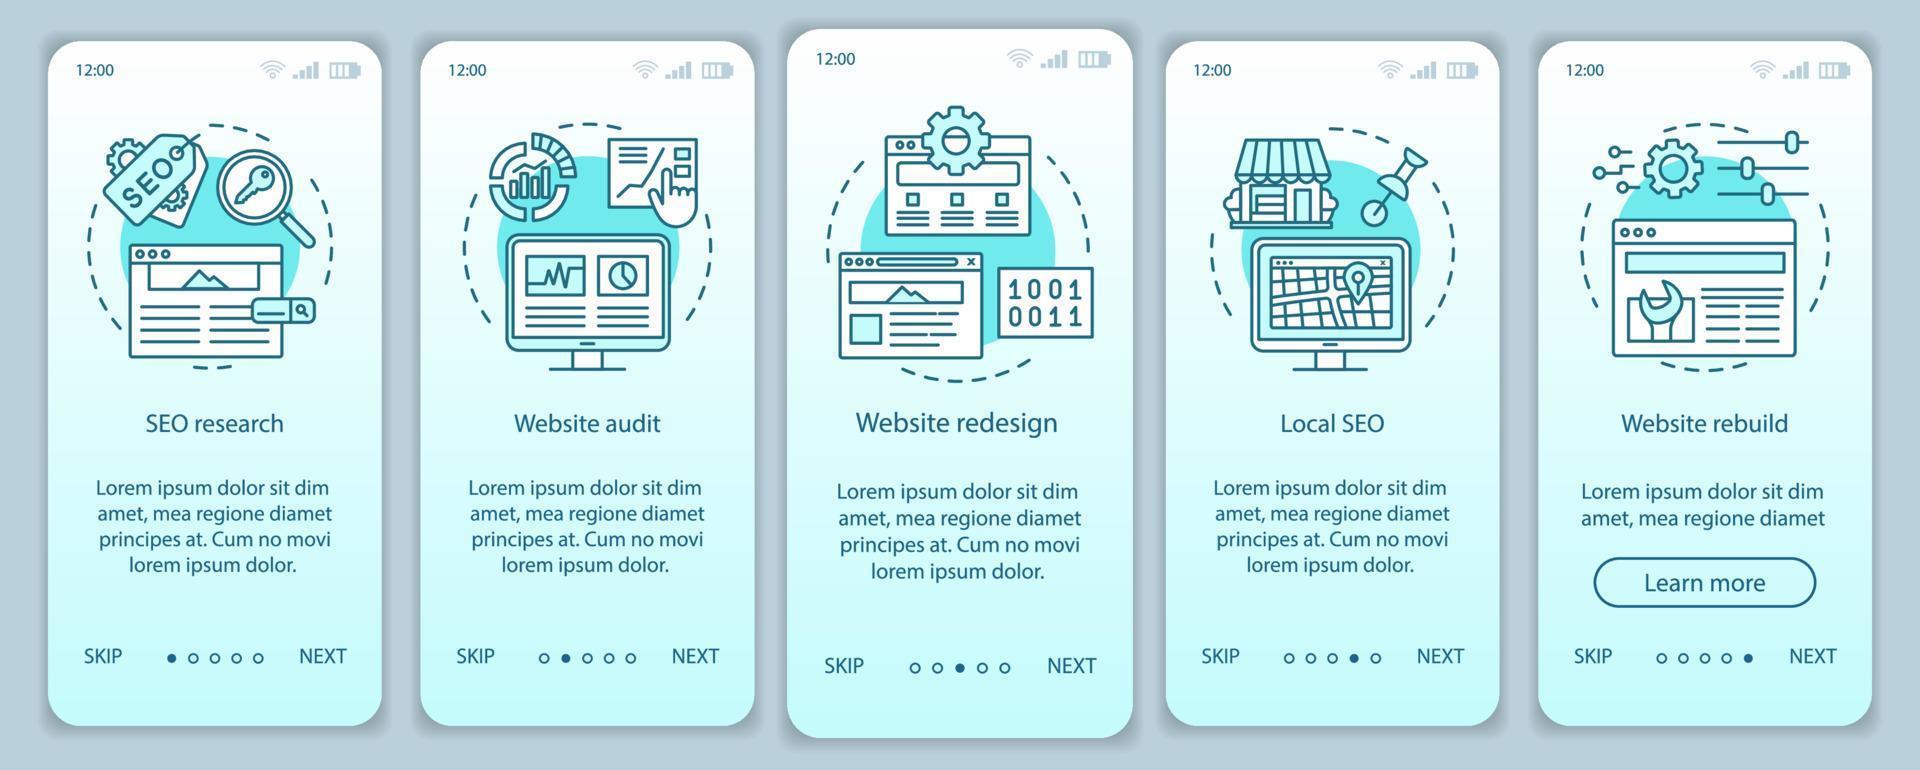 webbkonsultation onboarding mobil app sida skärm vektor mall. seo forskning. webbdesign, revision. genomgång av webbplatssteg med linjära illustrationer. ux, ui, gui smartphone gränssnitt koncept